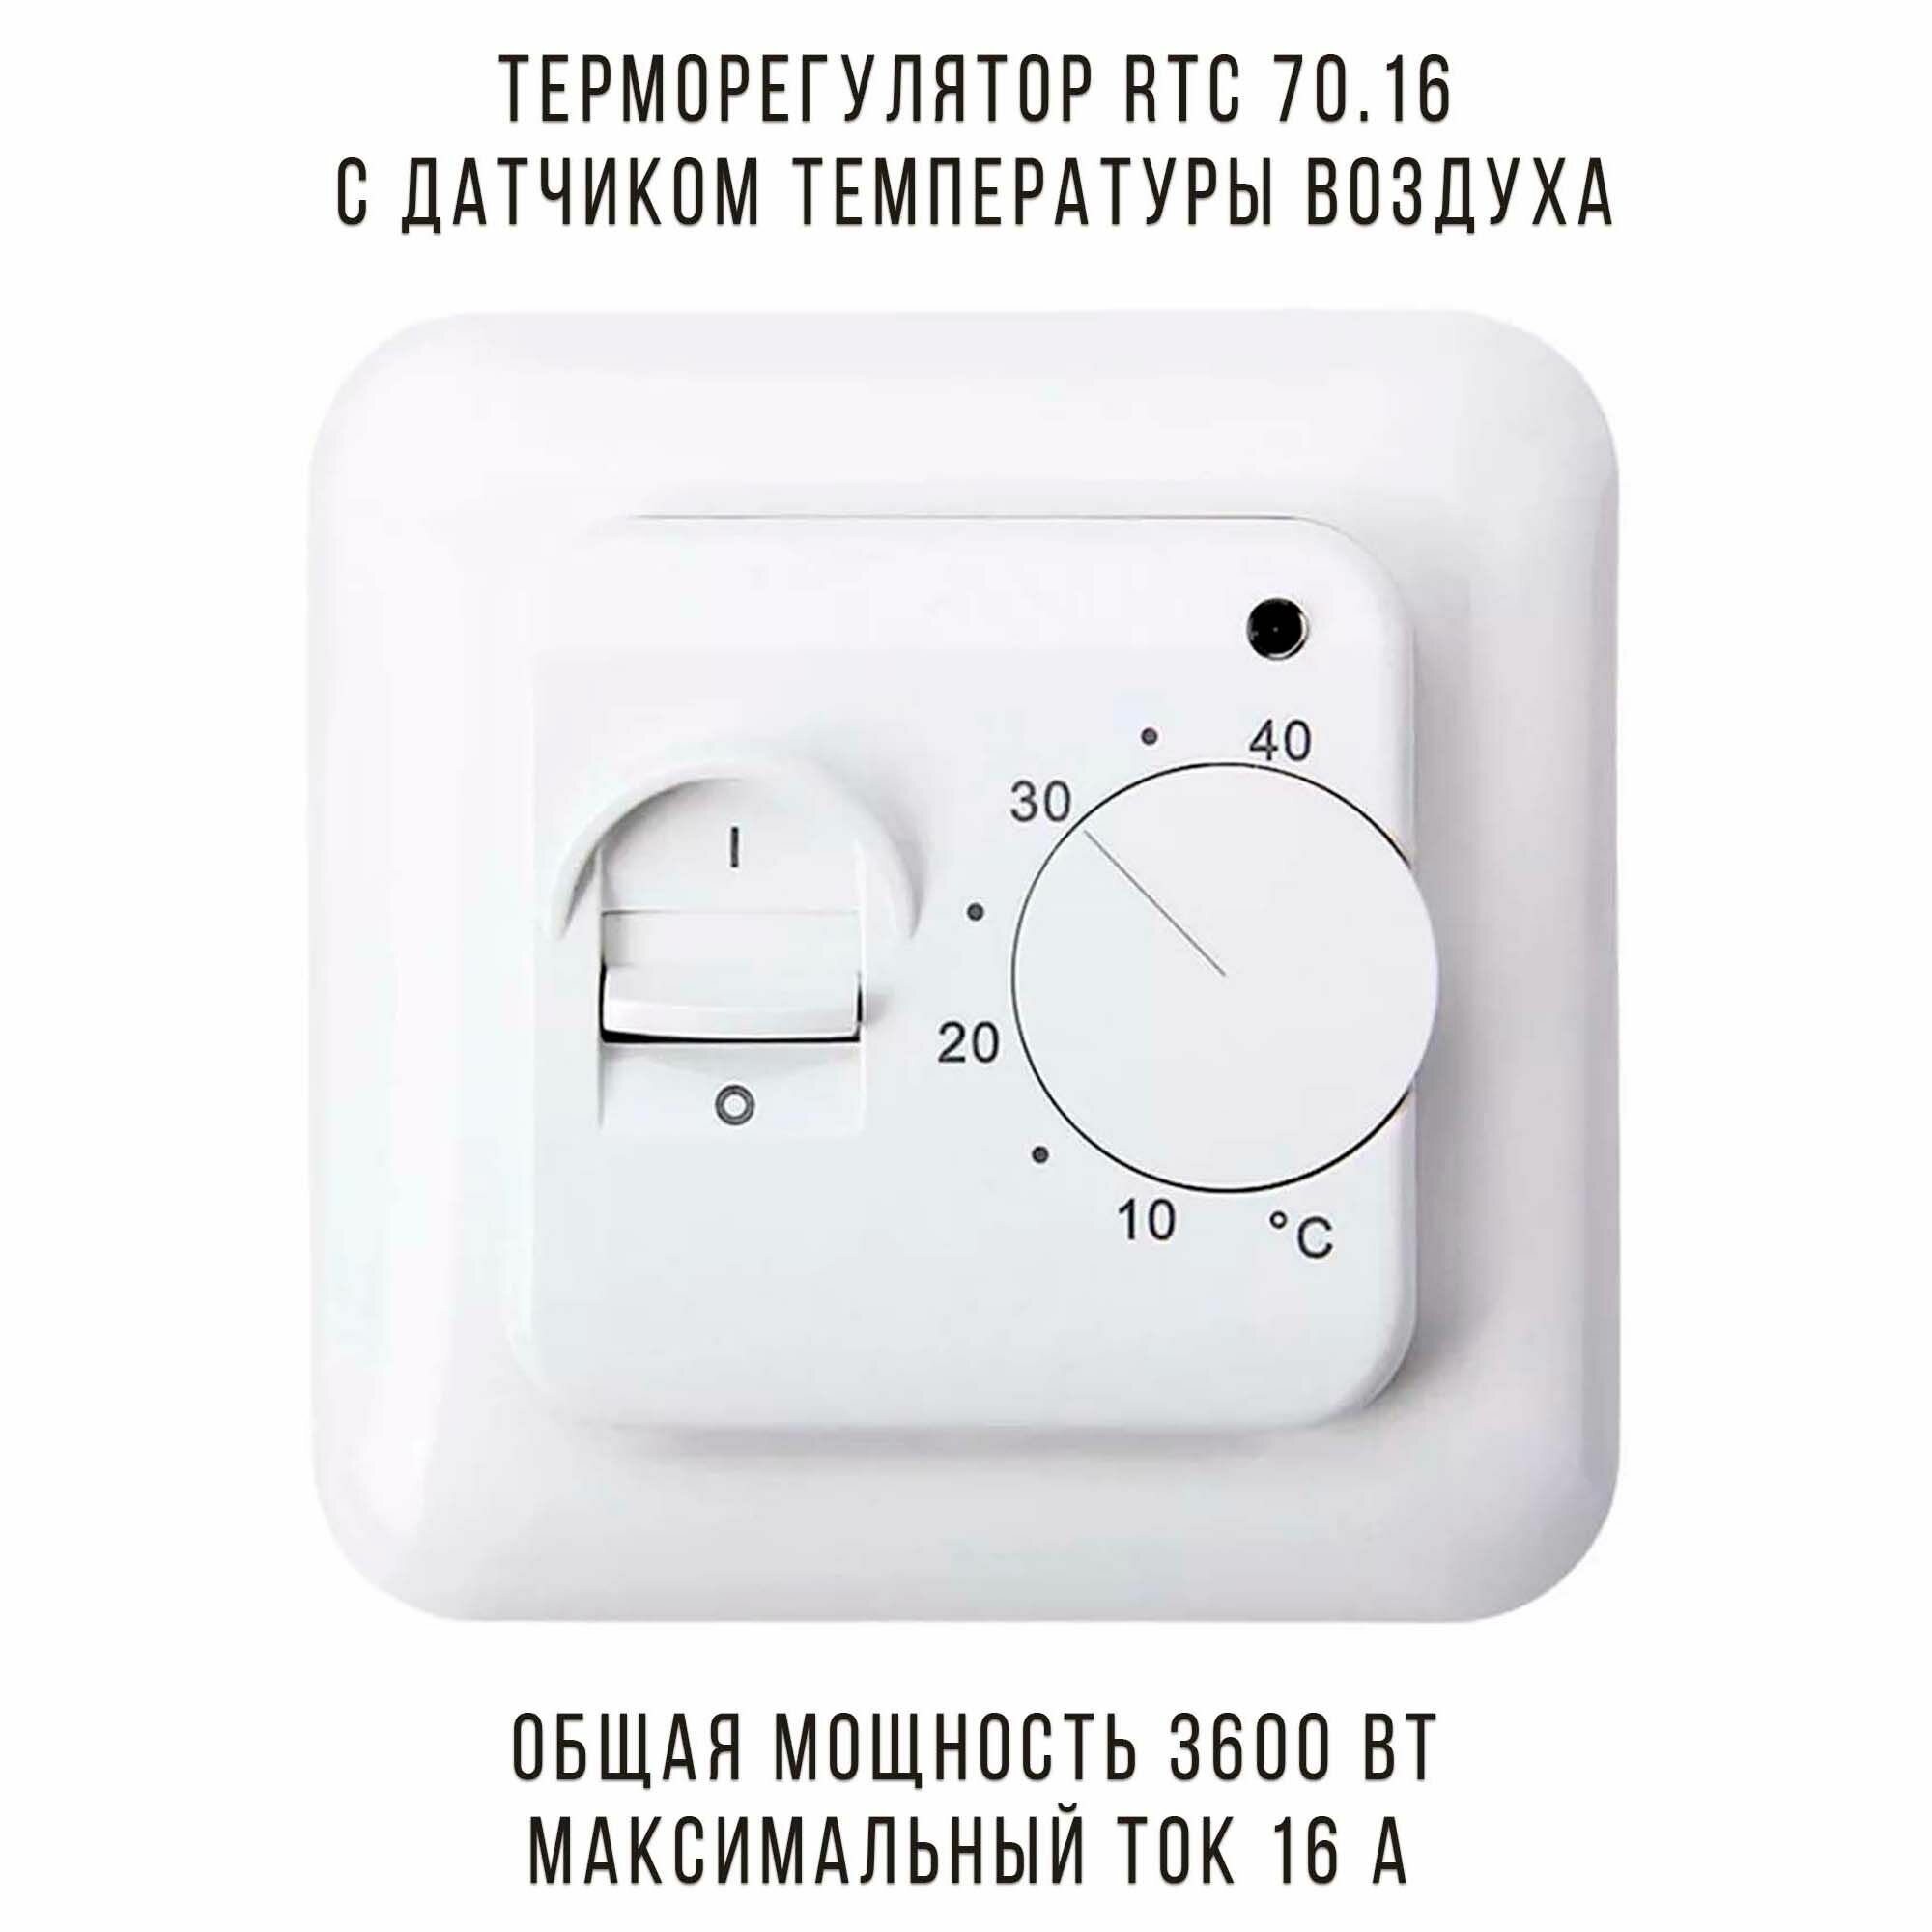 Терморегулятор 70.16 встраиваемый для обогревателей